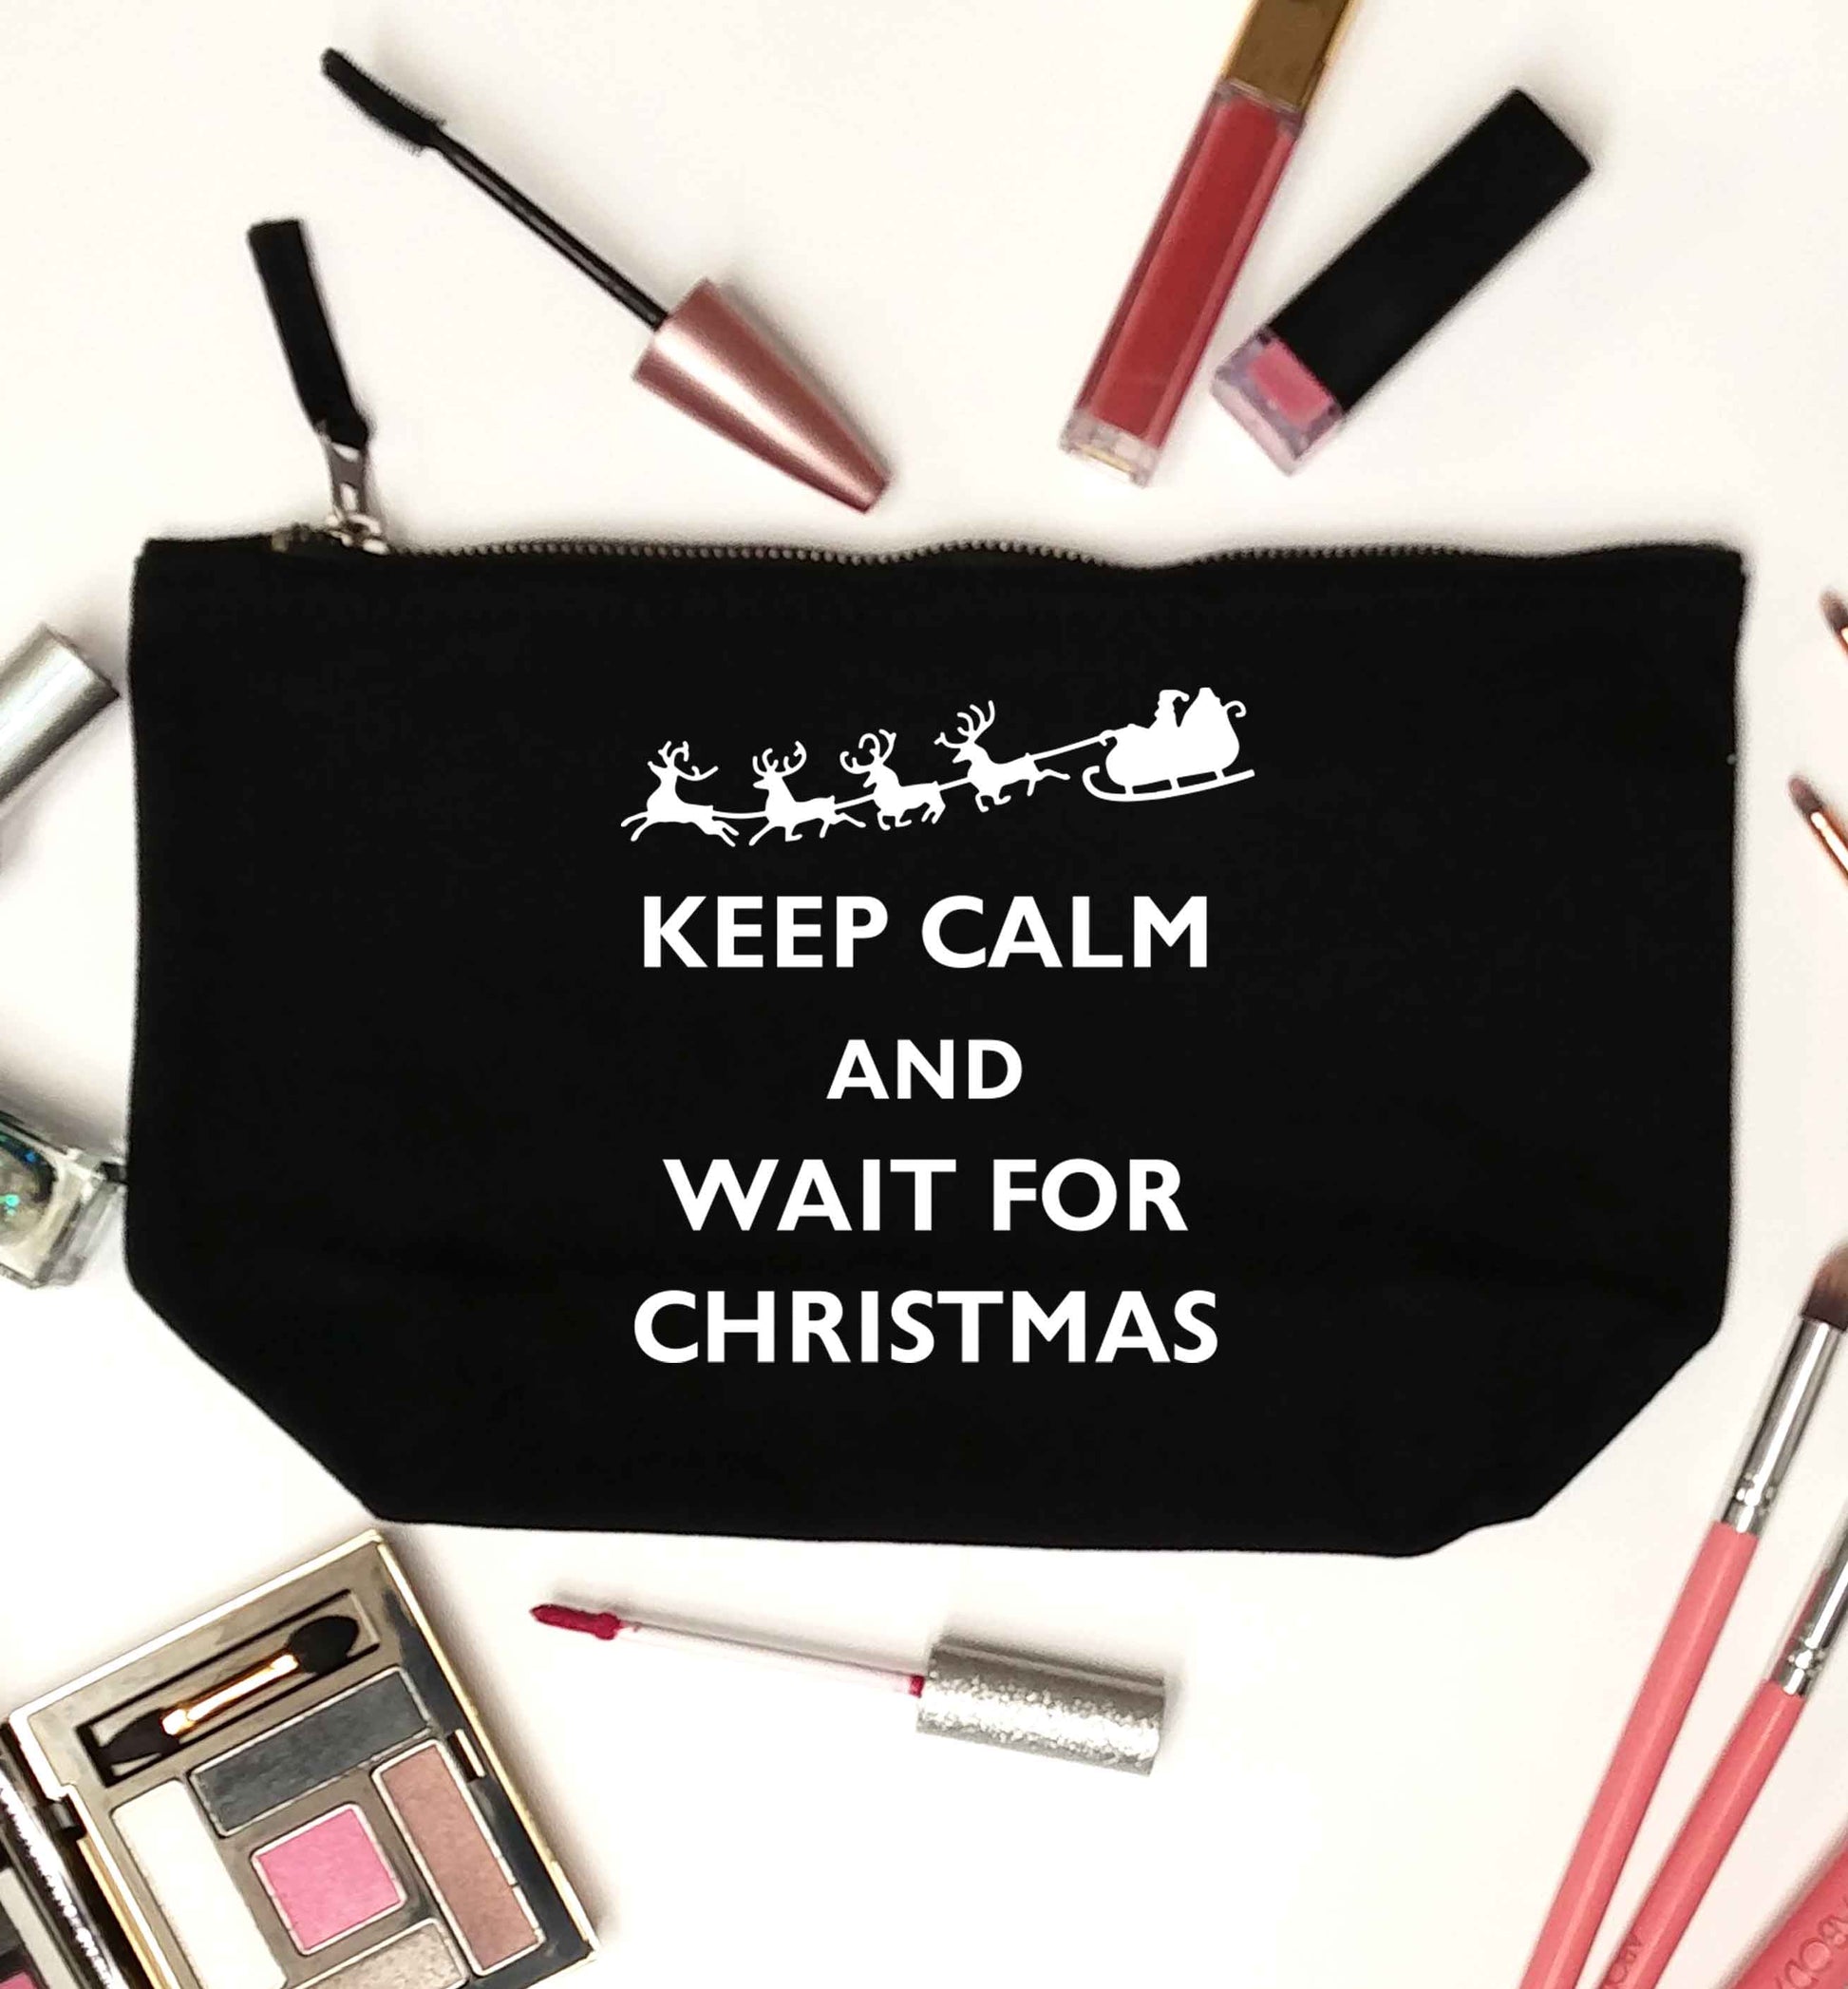 Keep calm and wait for Christmas black makeup bag